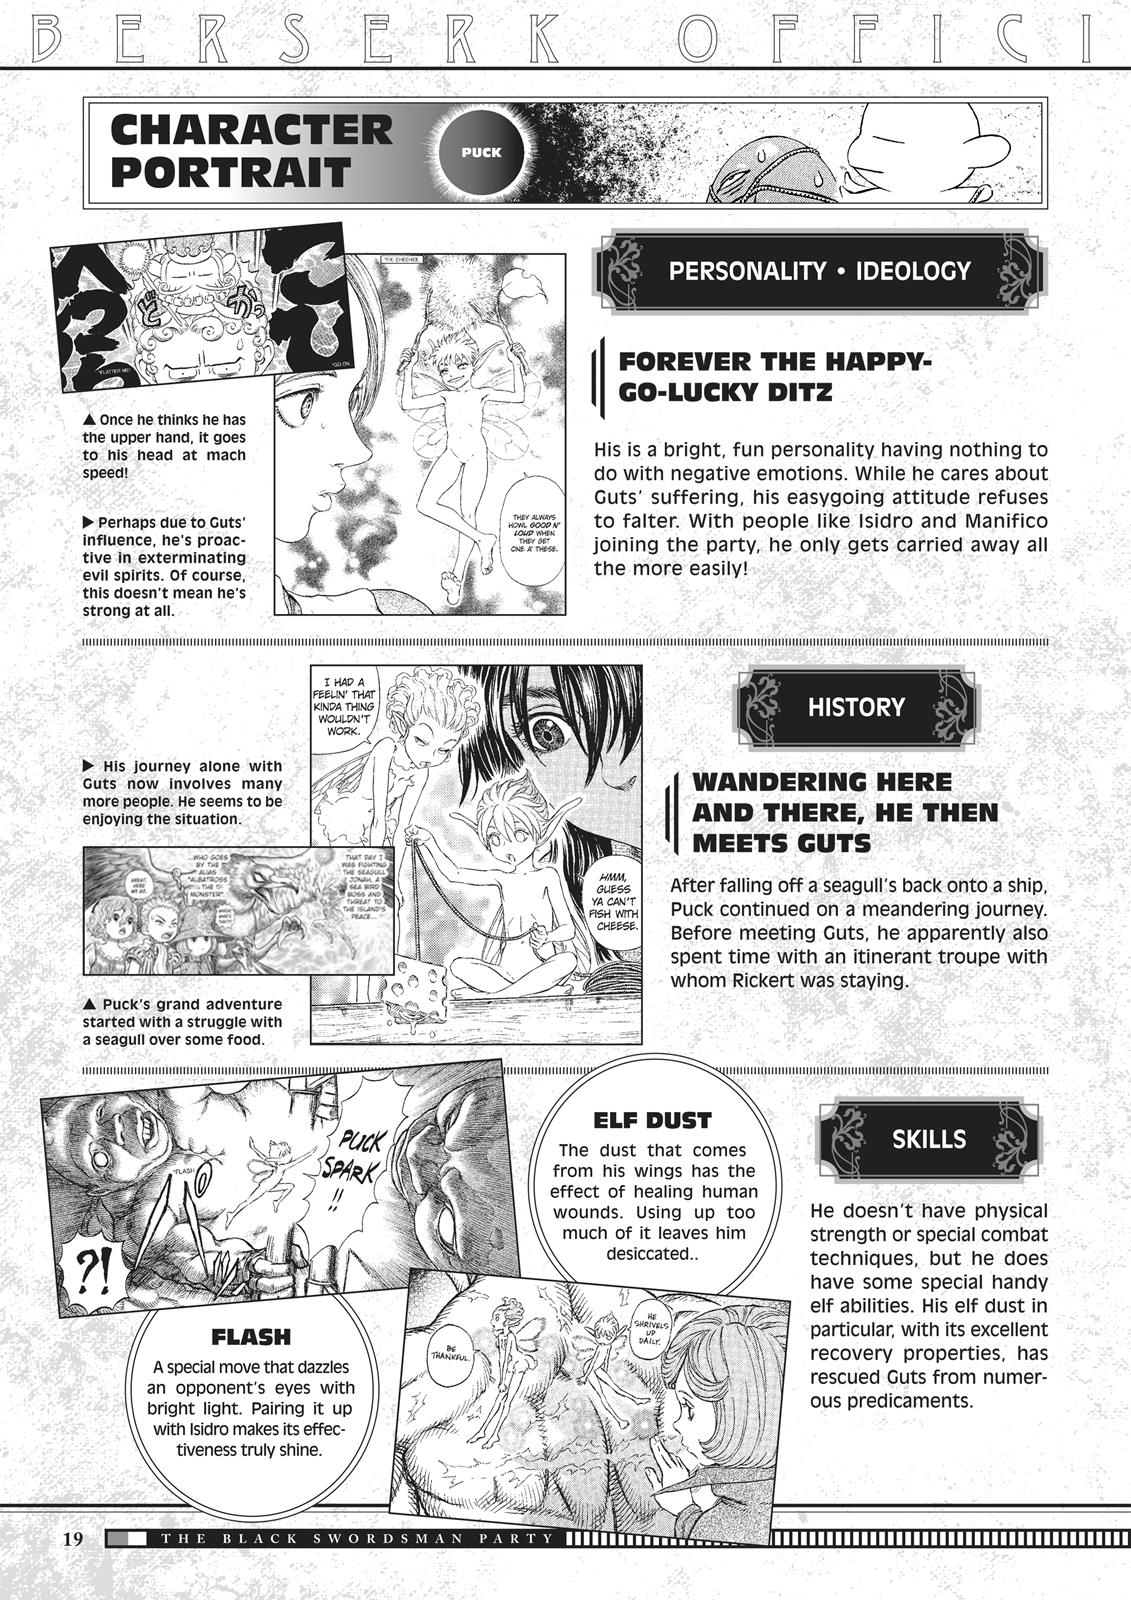 Berserk Manga Chapter 350.5 image 020